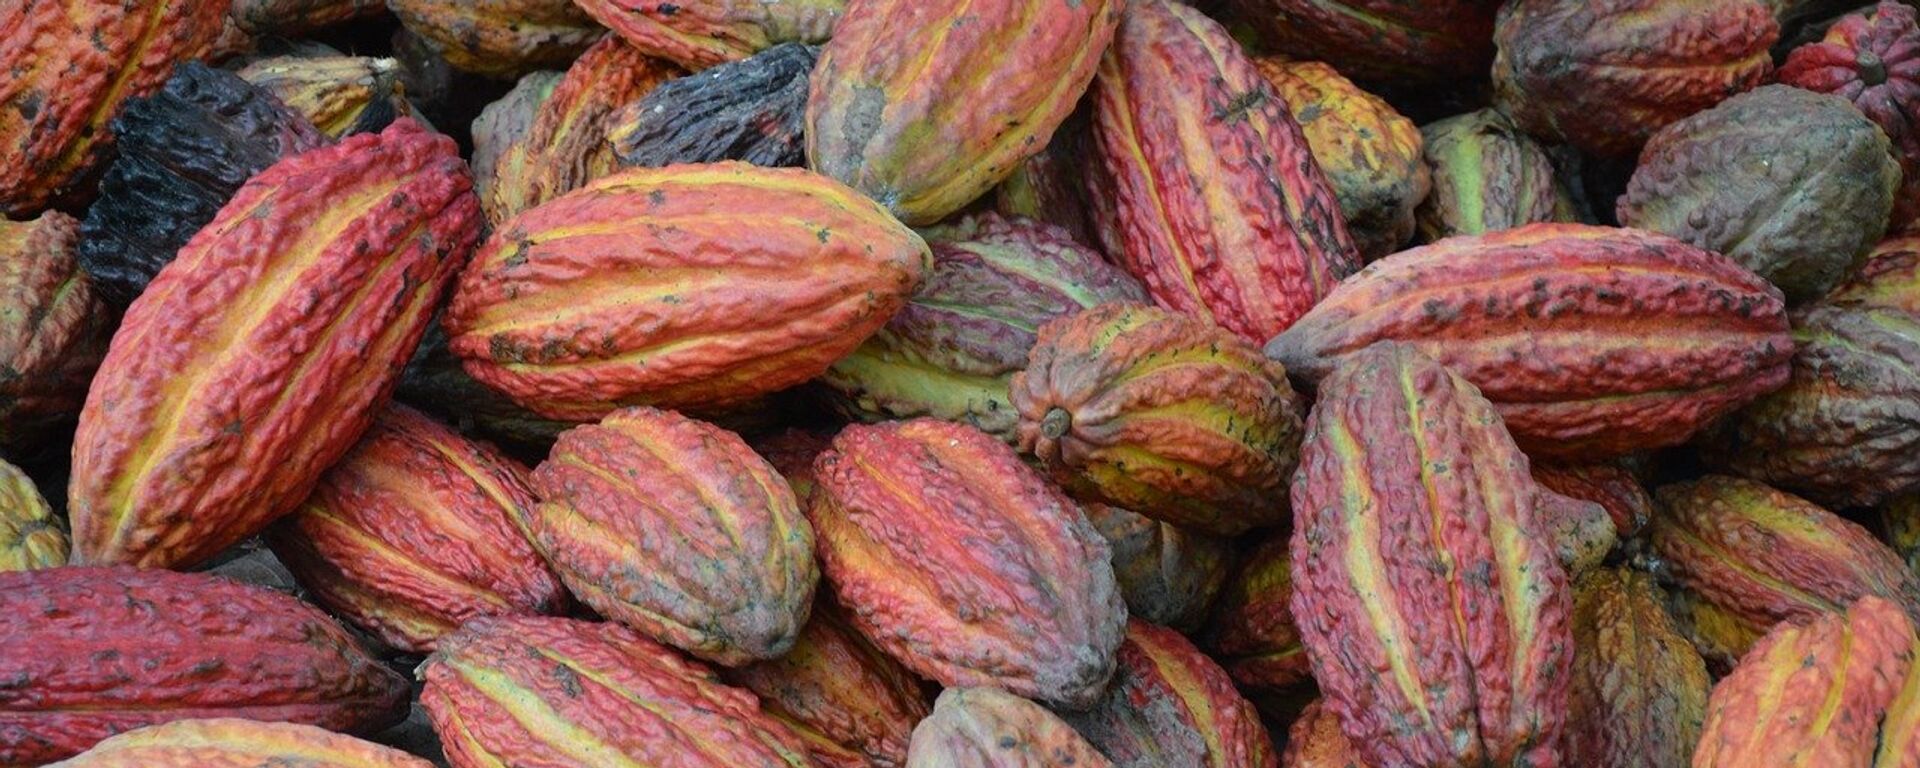 Granos de cacao, referencial - Sputnik Mundo, 1920, 19.11.2019